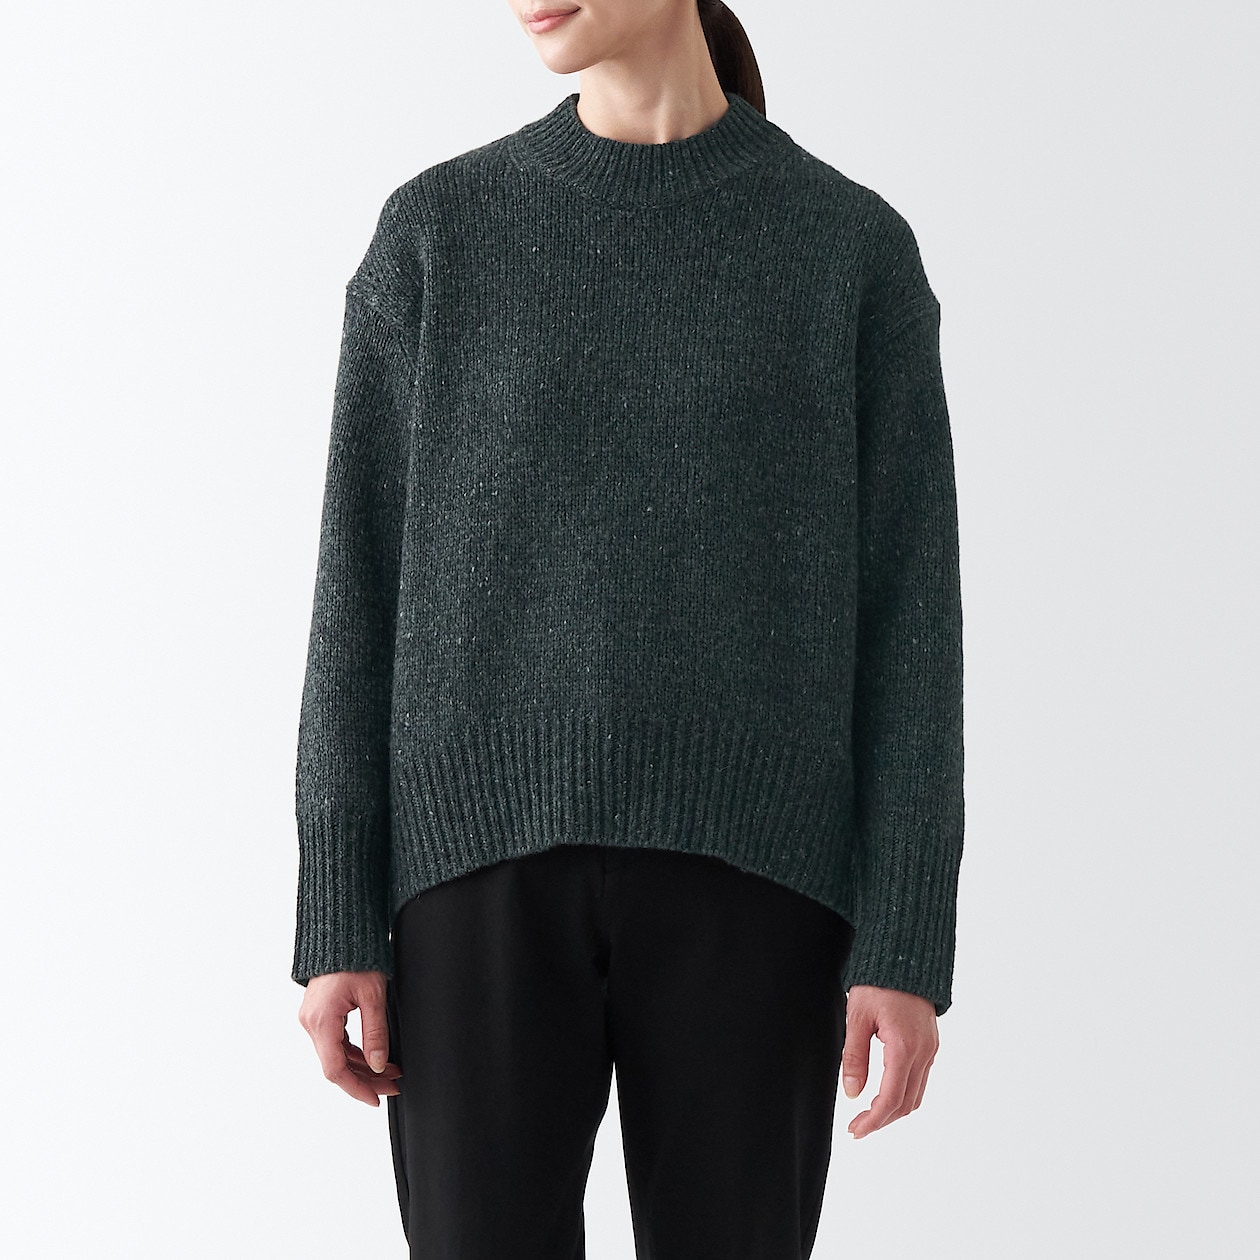 ウール混ネップ糸モックネックセーター 婦人M・ダークグレー | セーター・ベスト・ニット | 婦人・レディース 通販 | 無印良品